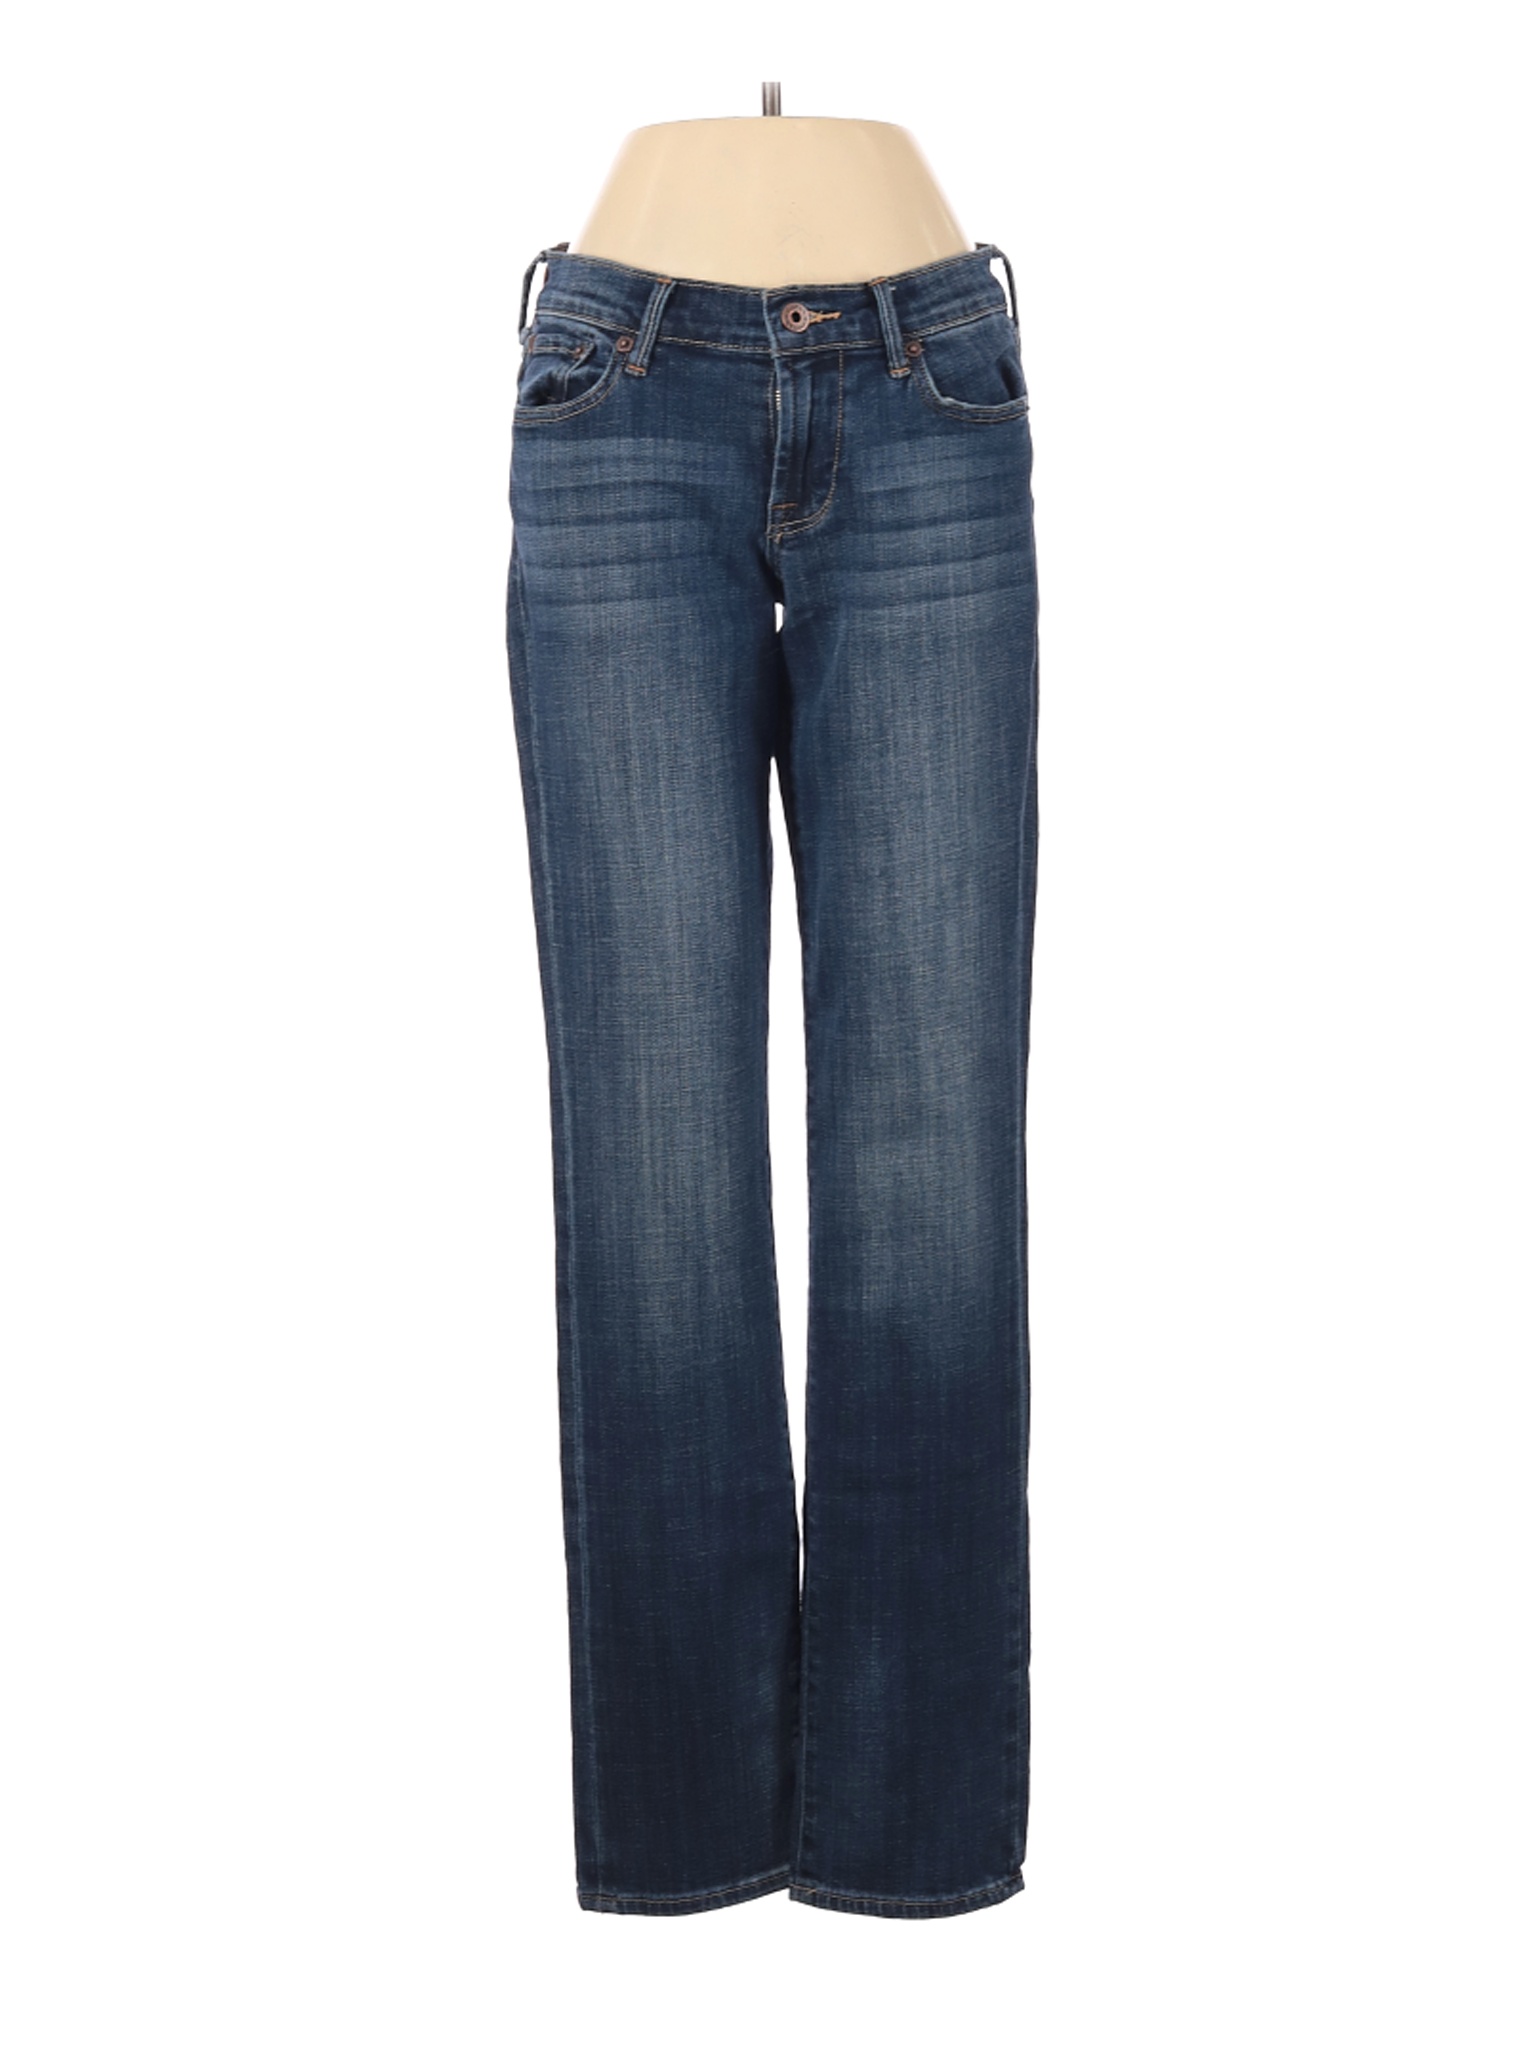 Lucky Brand Women Blue Jeans 26W | eBay